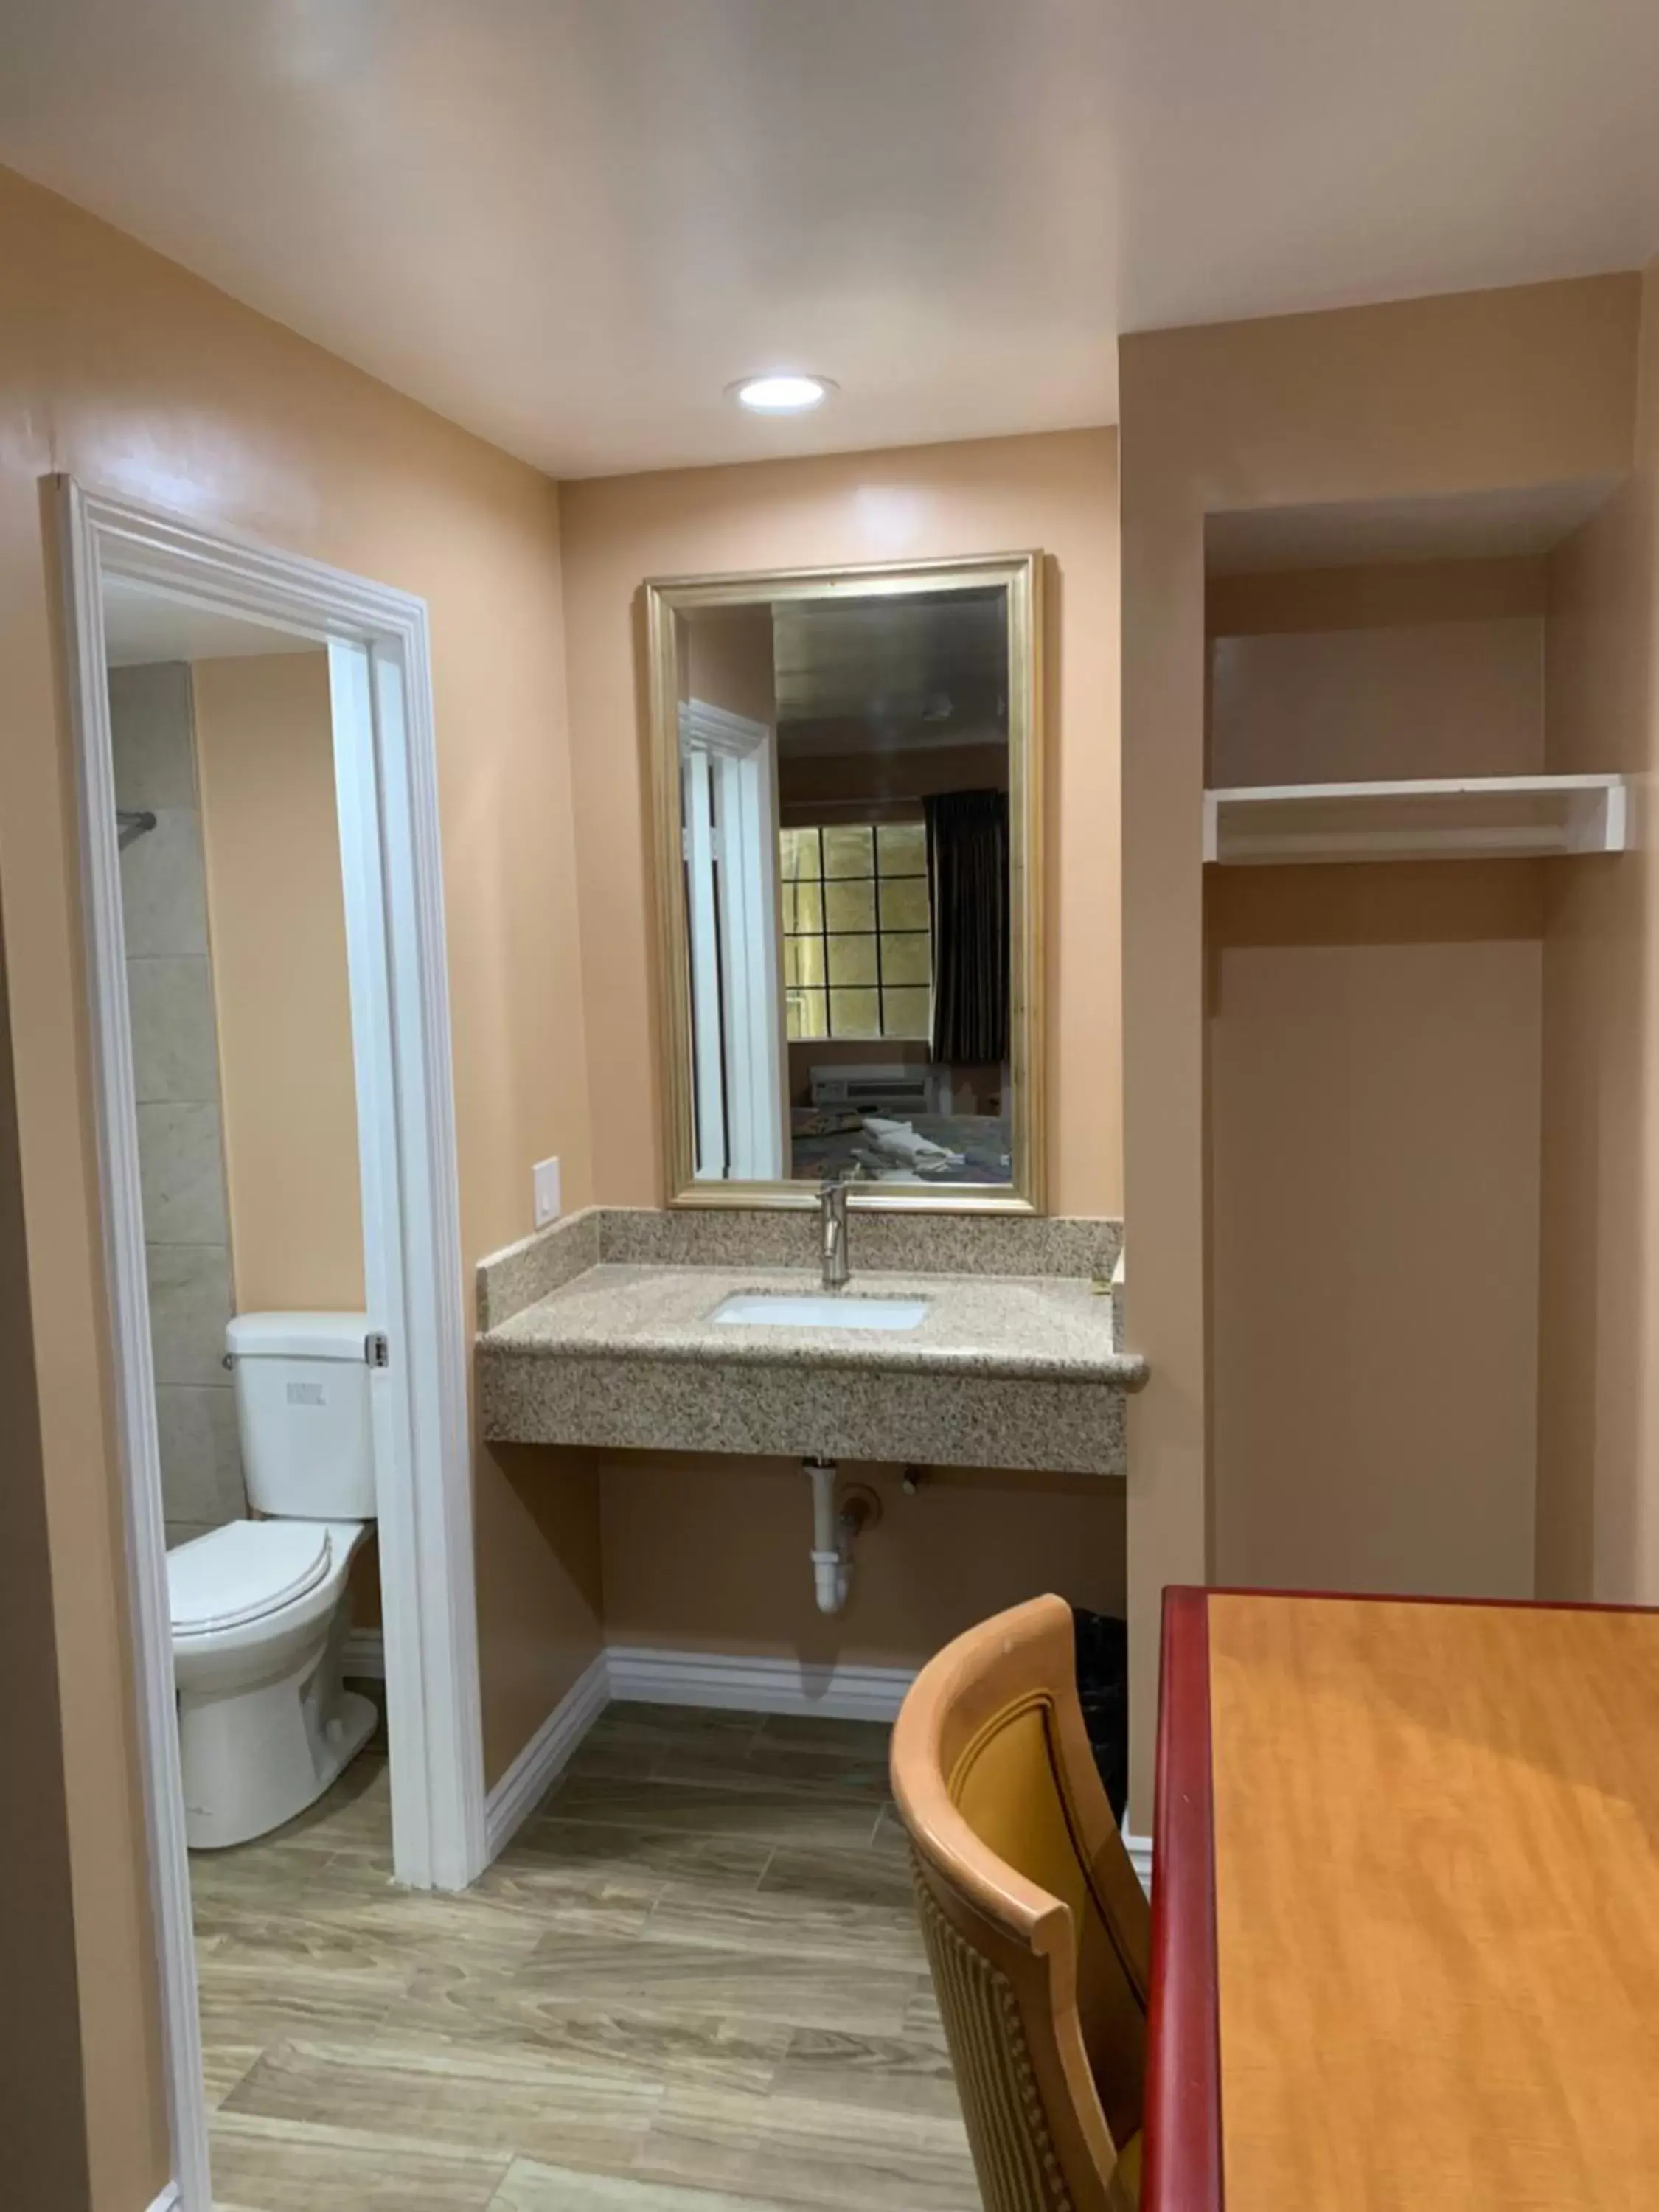 Bathroom in Budget Inn Motel